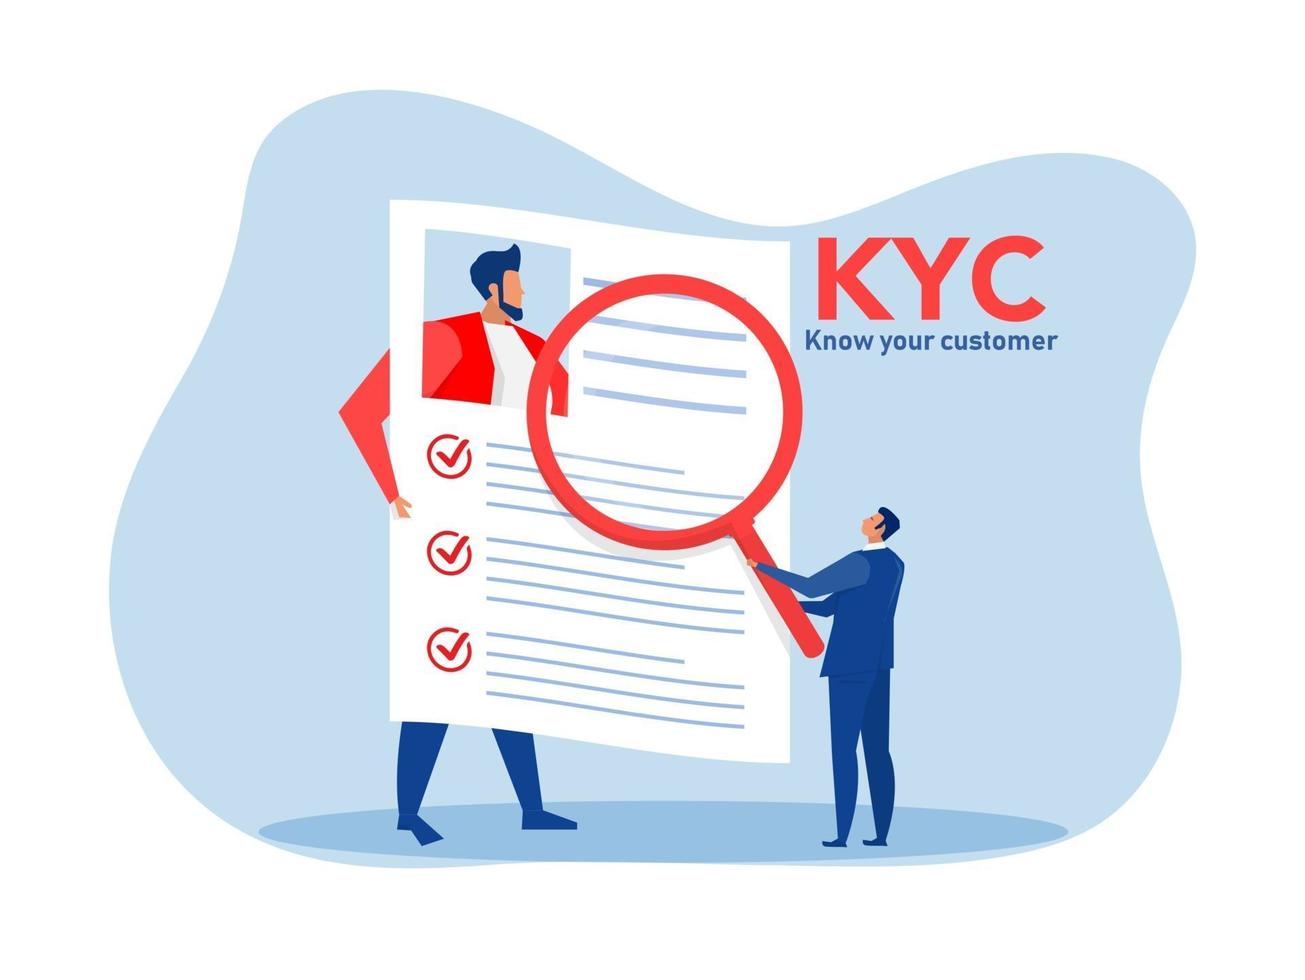 kyc oder kennen Sie Ihren Kunden mit Unternehmen, um die Identität zu überprüfen vektor